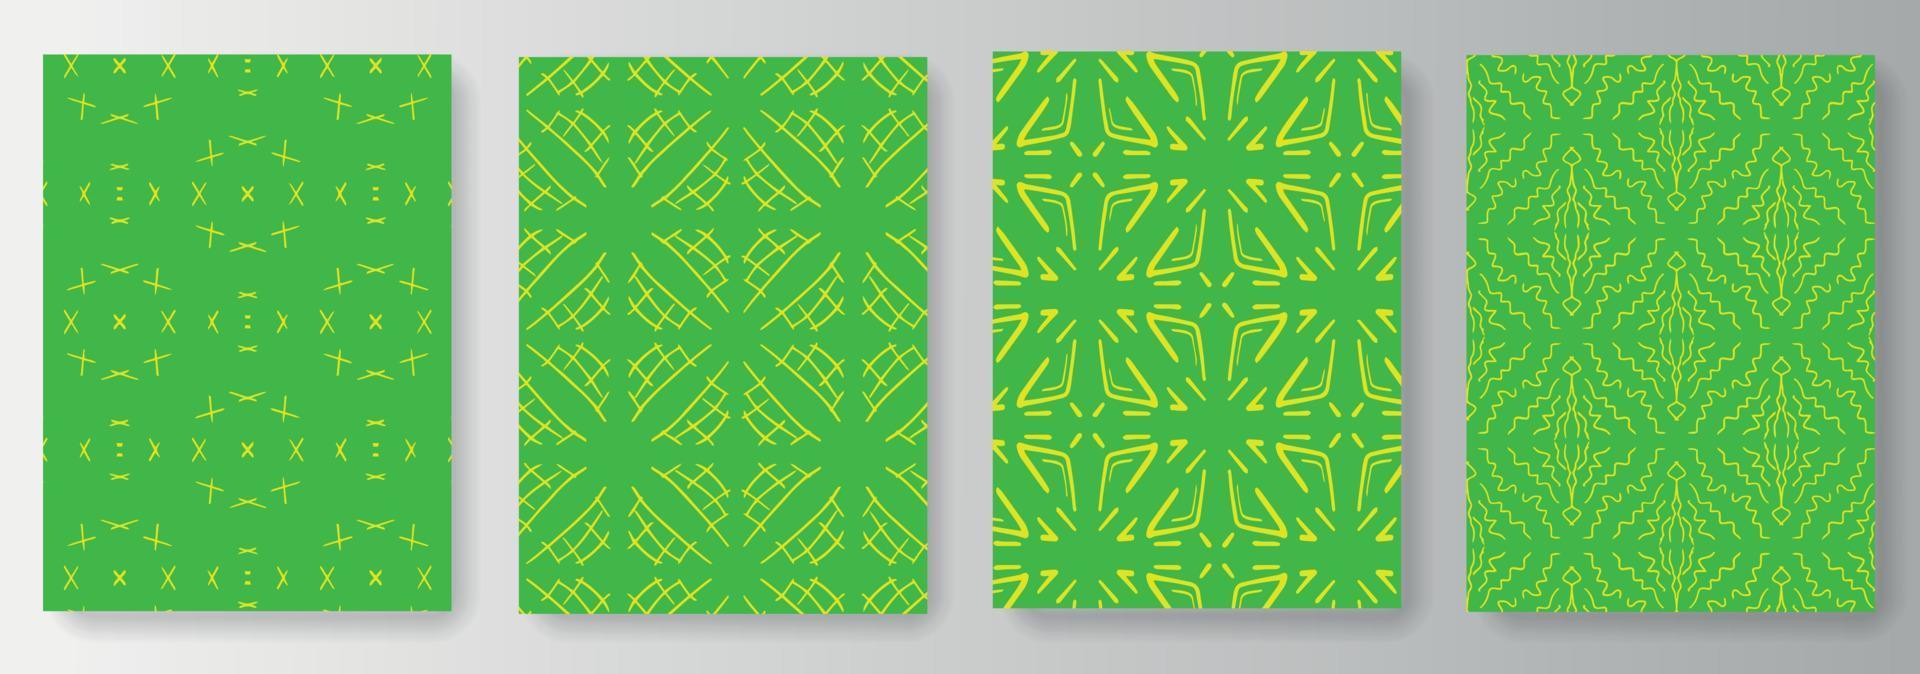 samling av gröna bakgrunder med gult mönster vektor